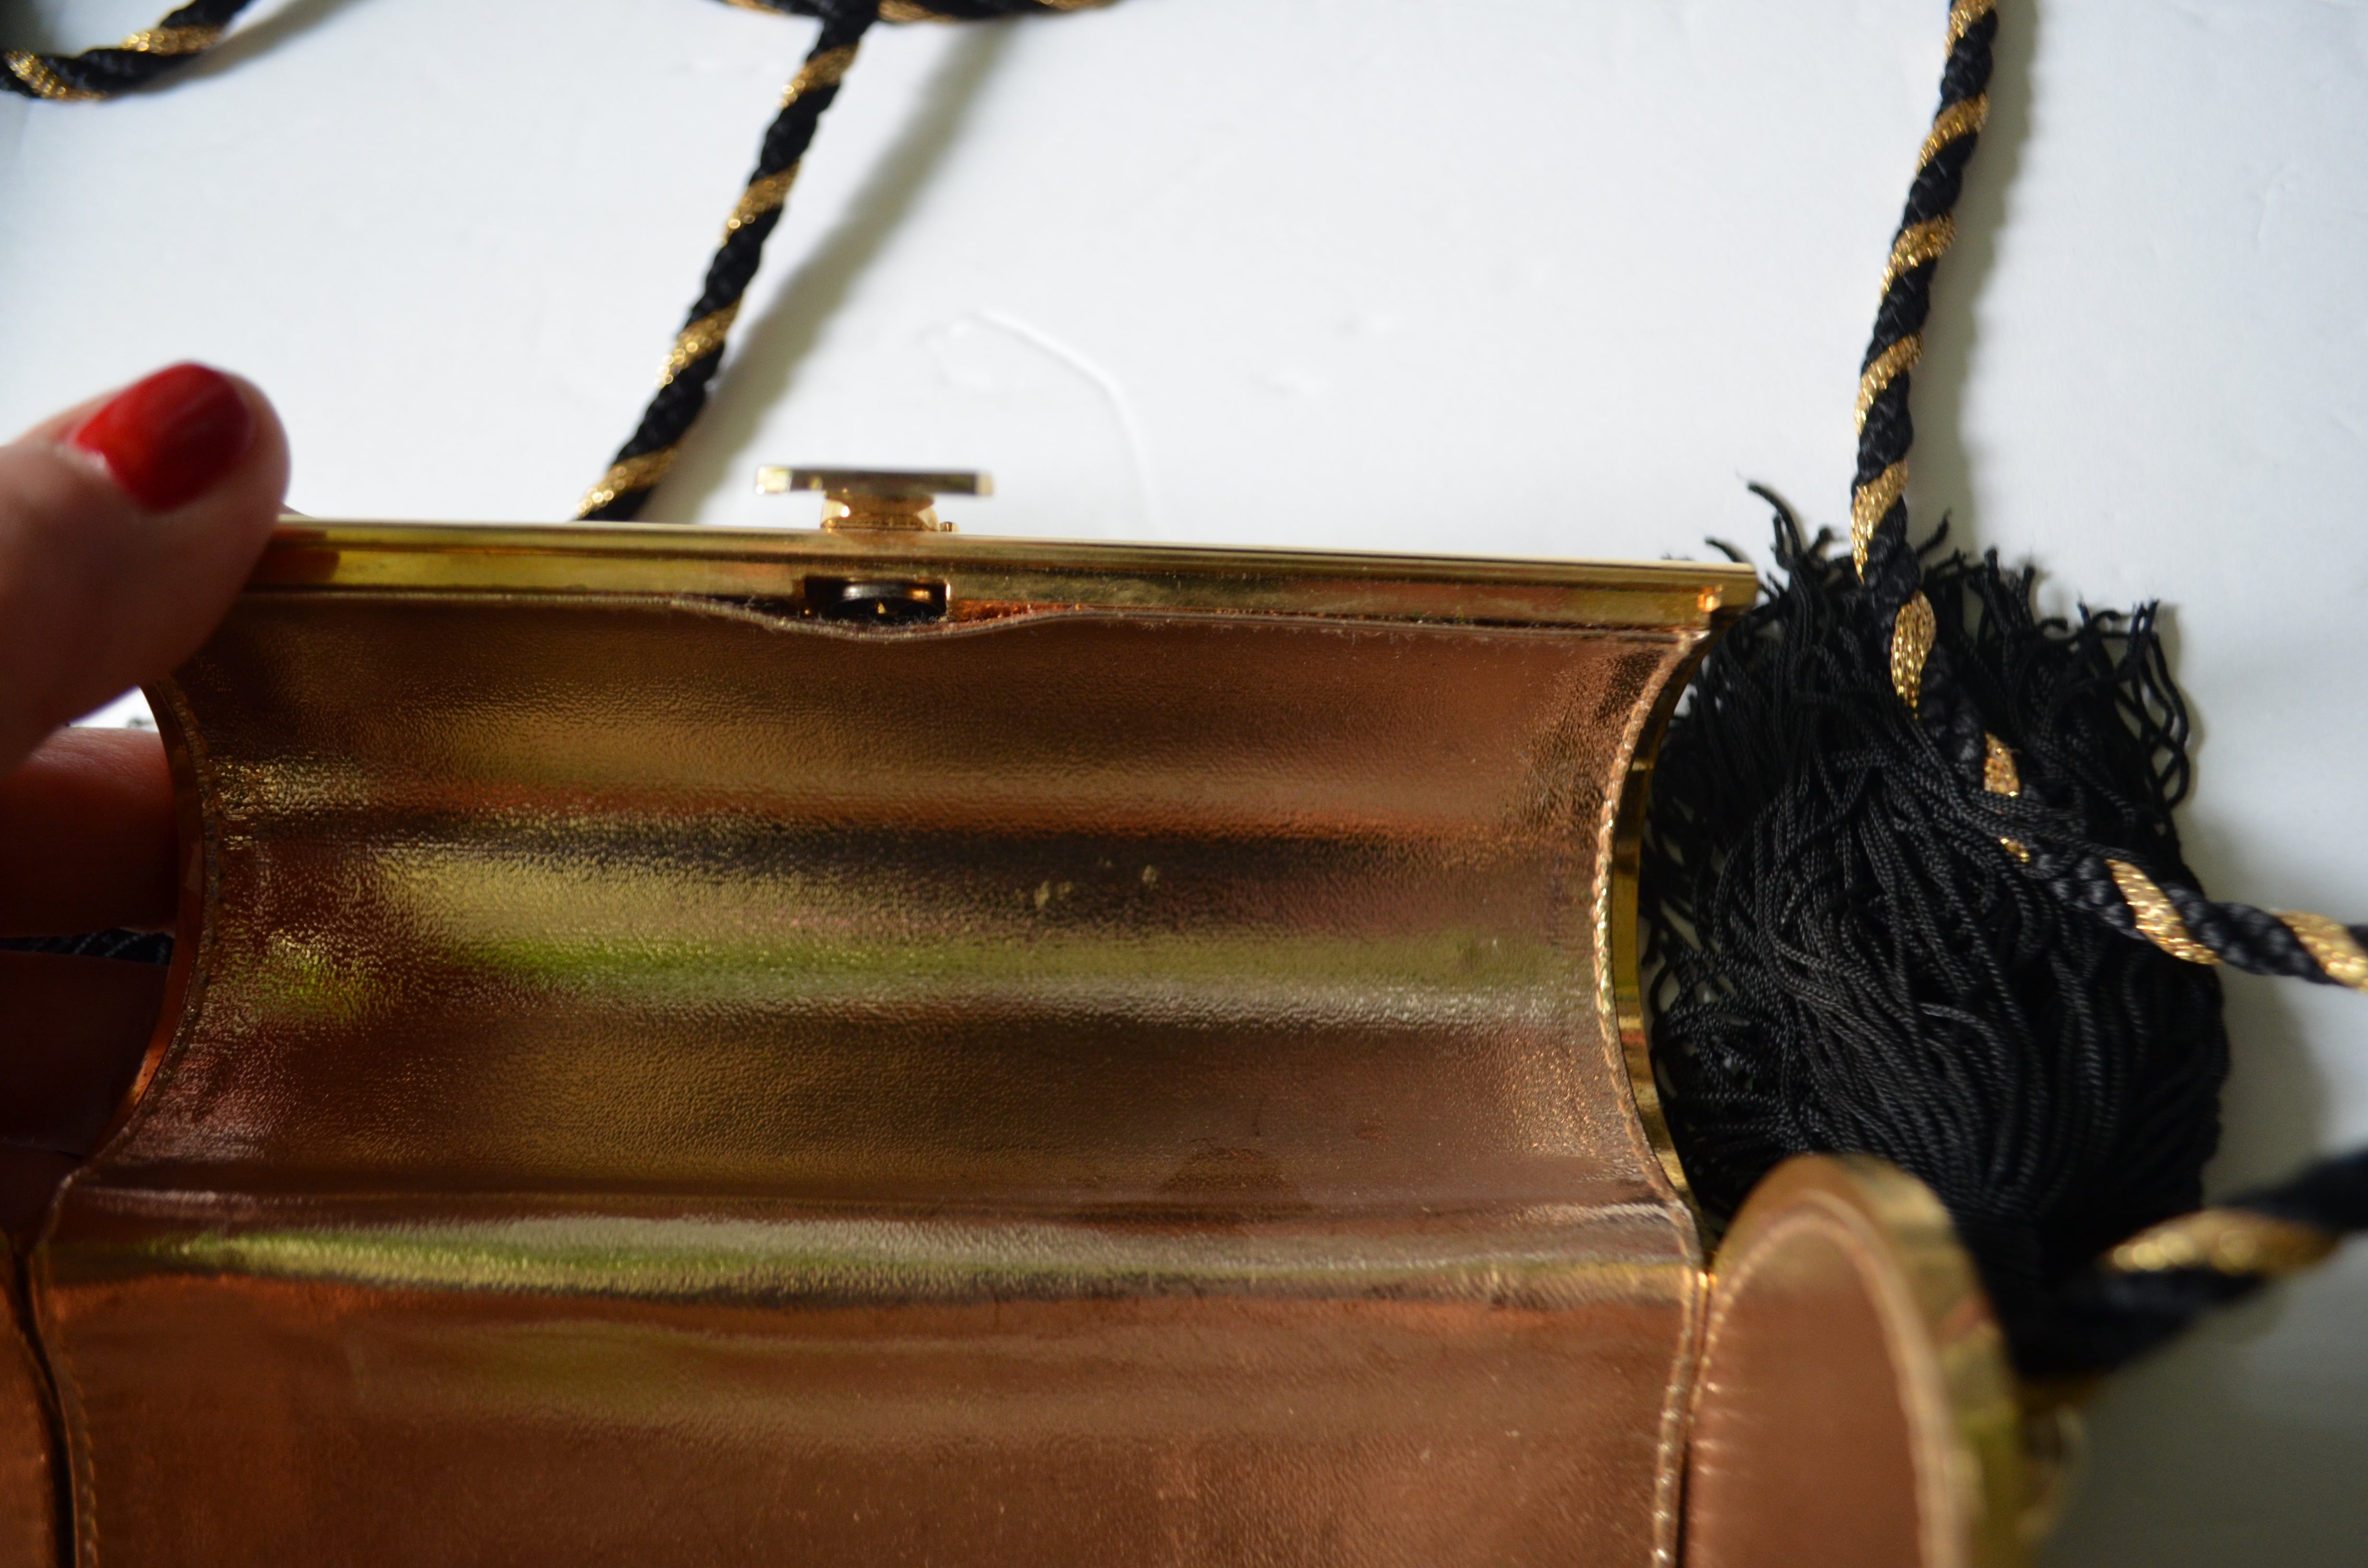 YVES SAINT LAURENT Minaudière Gold metal case tassel Purse Clutch Shoulder bag